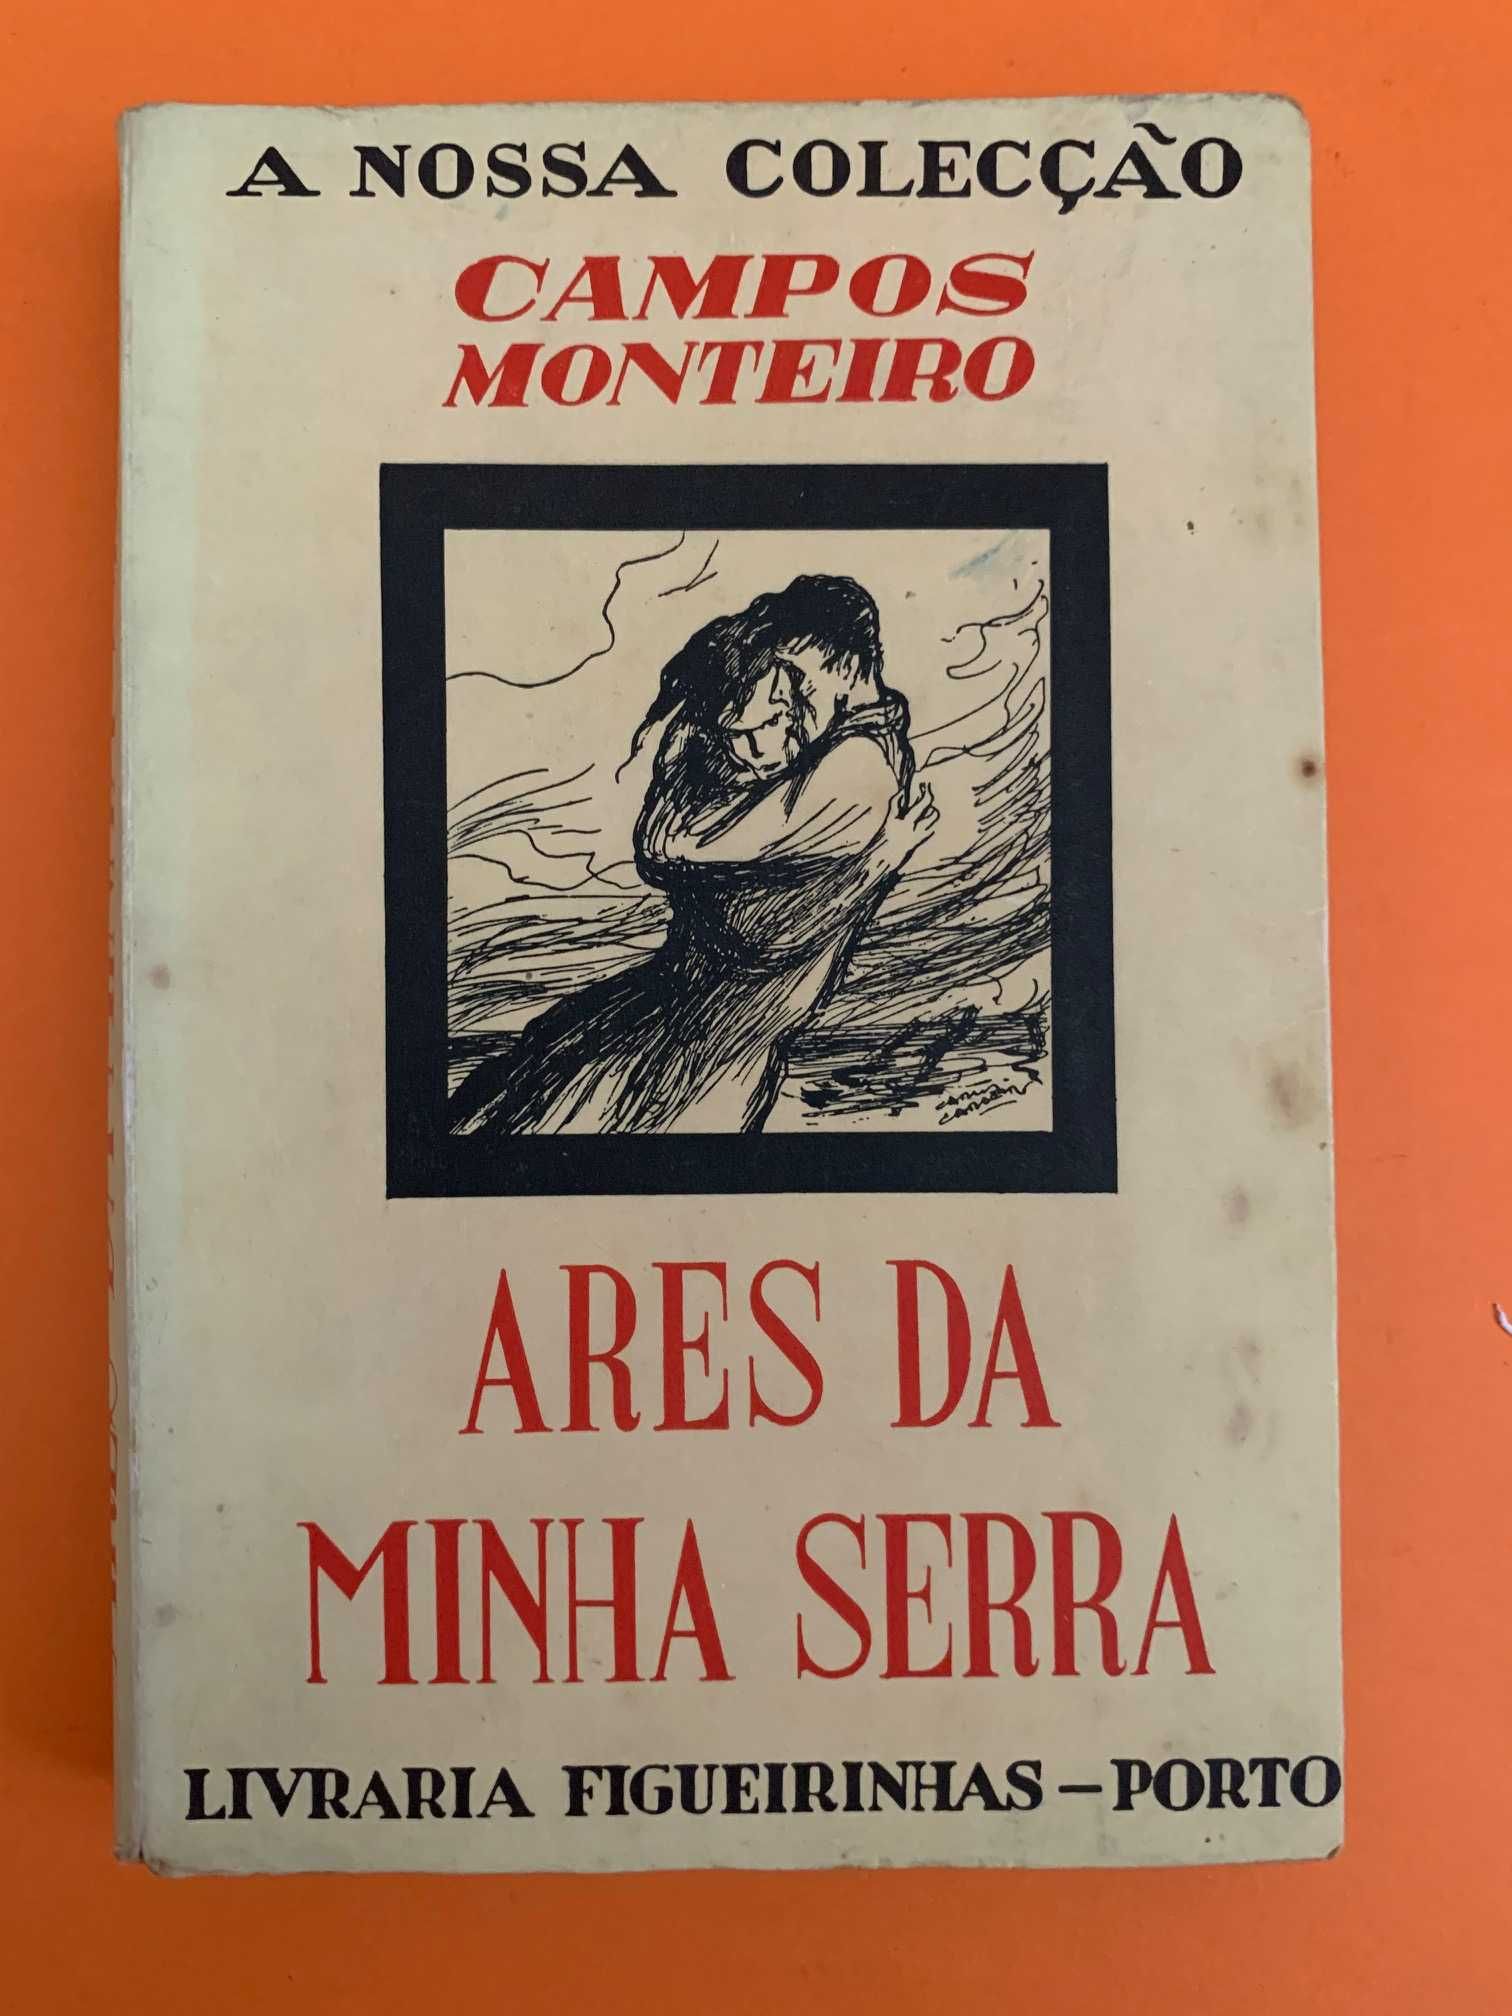 Ares da minha serra (2ª Edição, 5º milhar) - Campos Monteiro